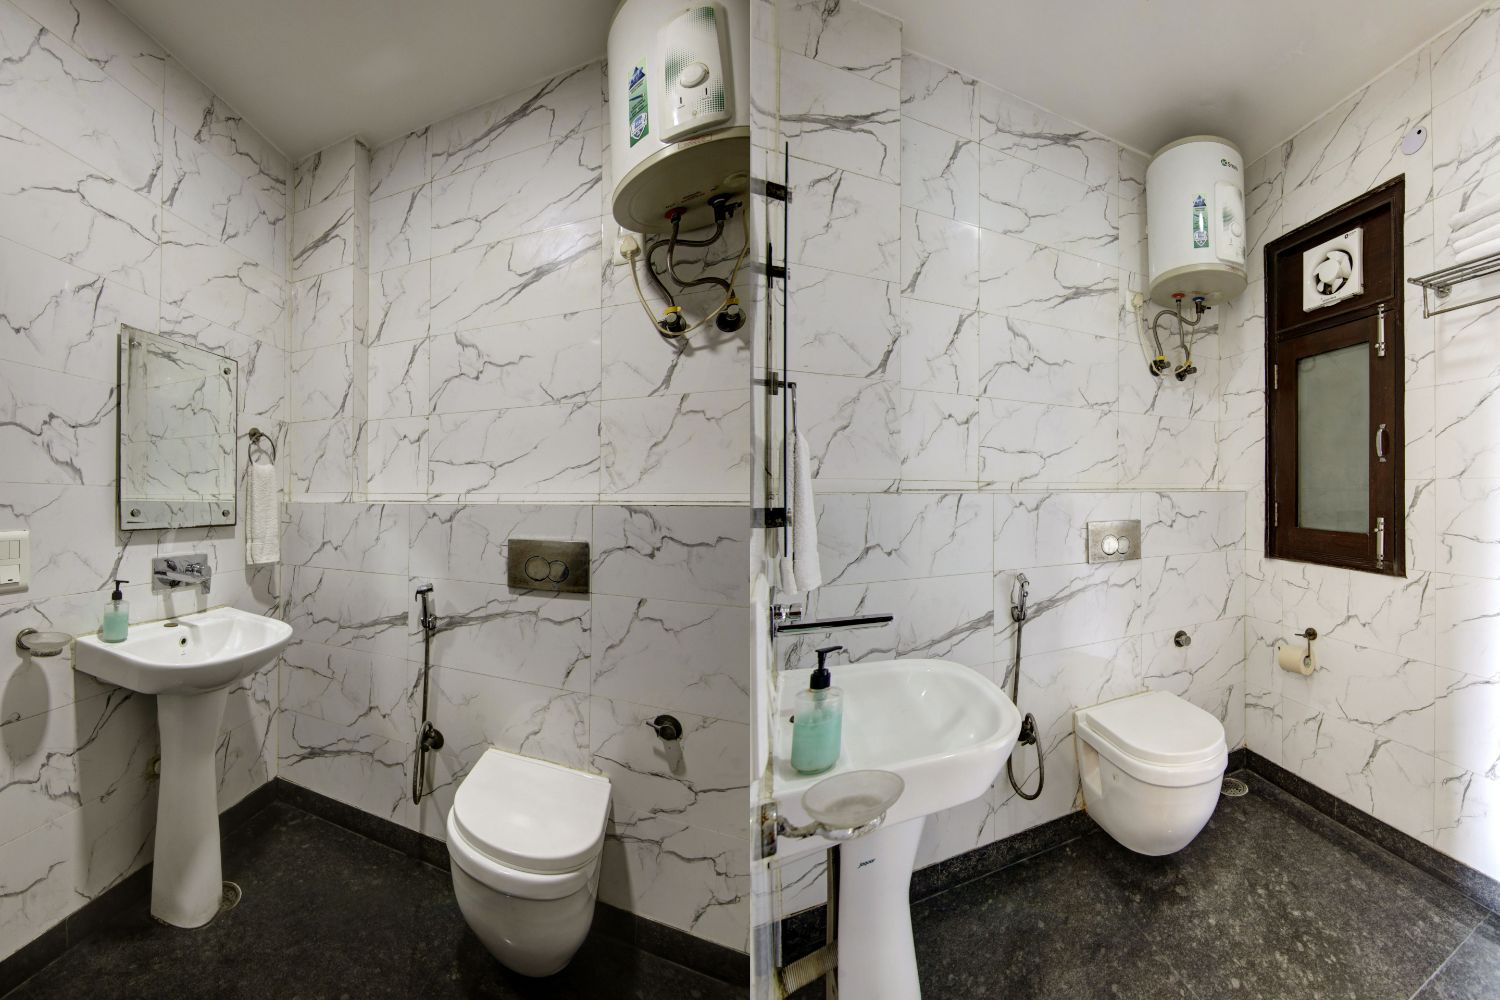 Super Deluxe Embassy Washrooms in noida